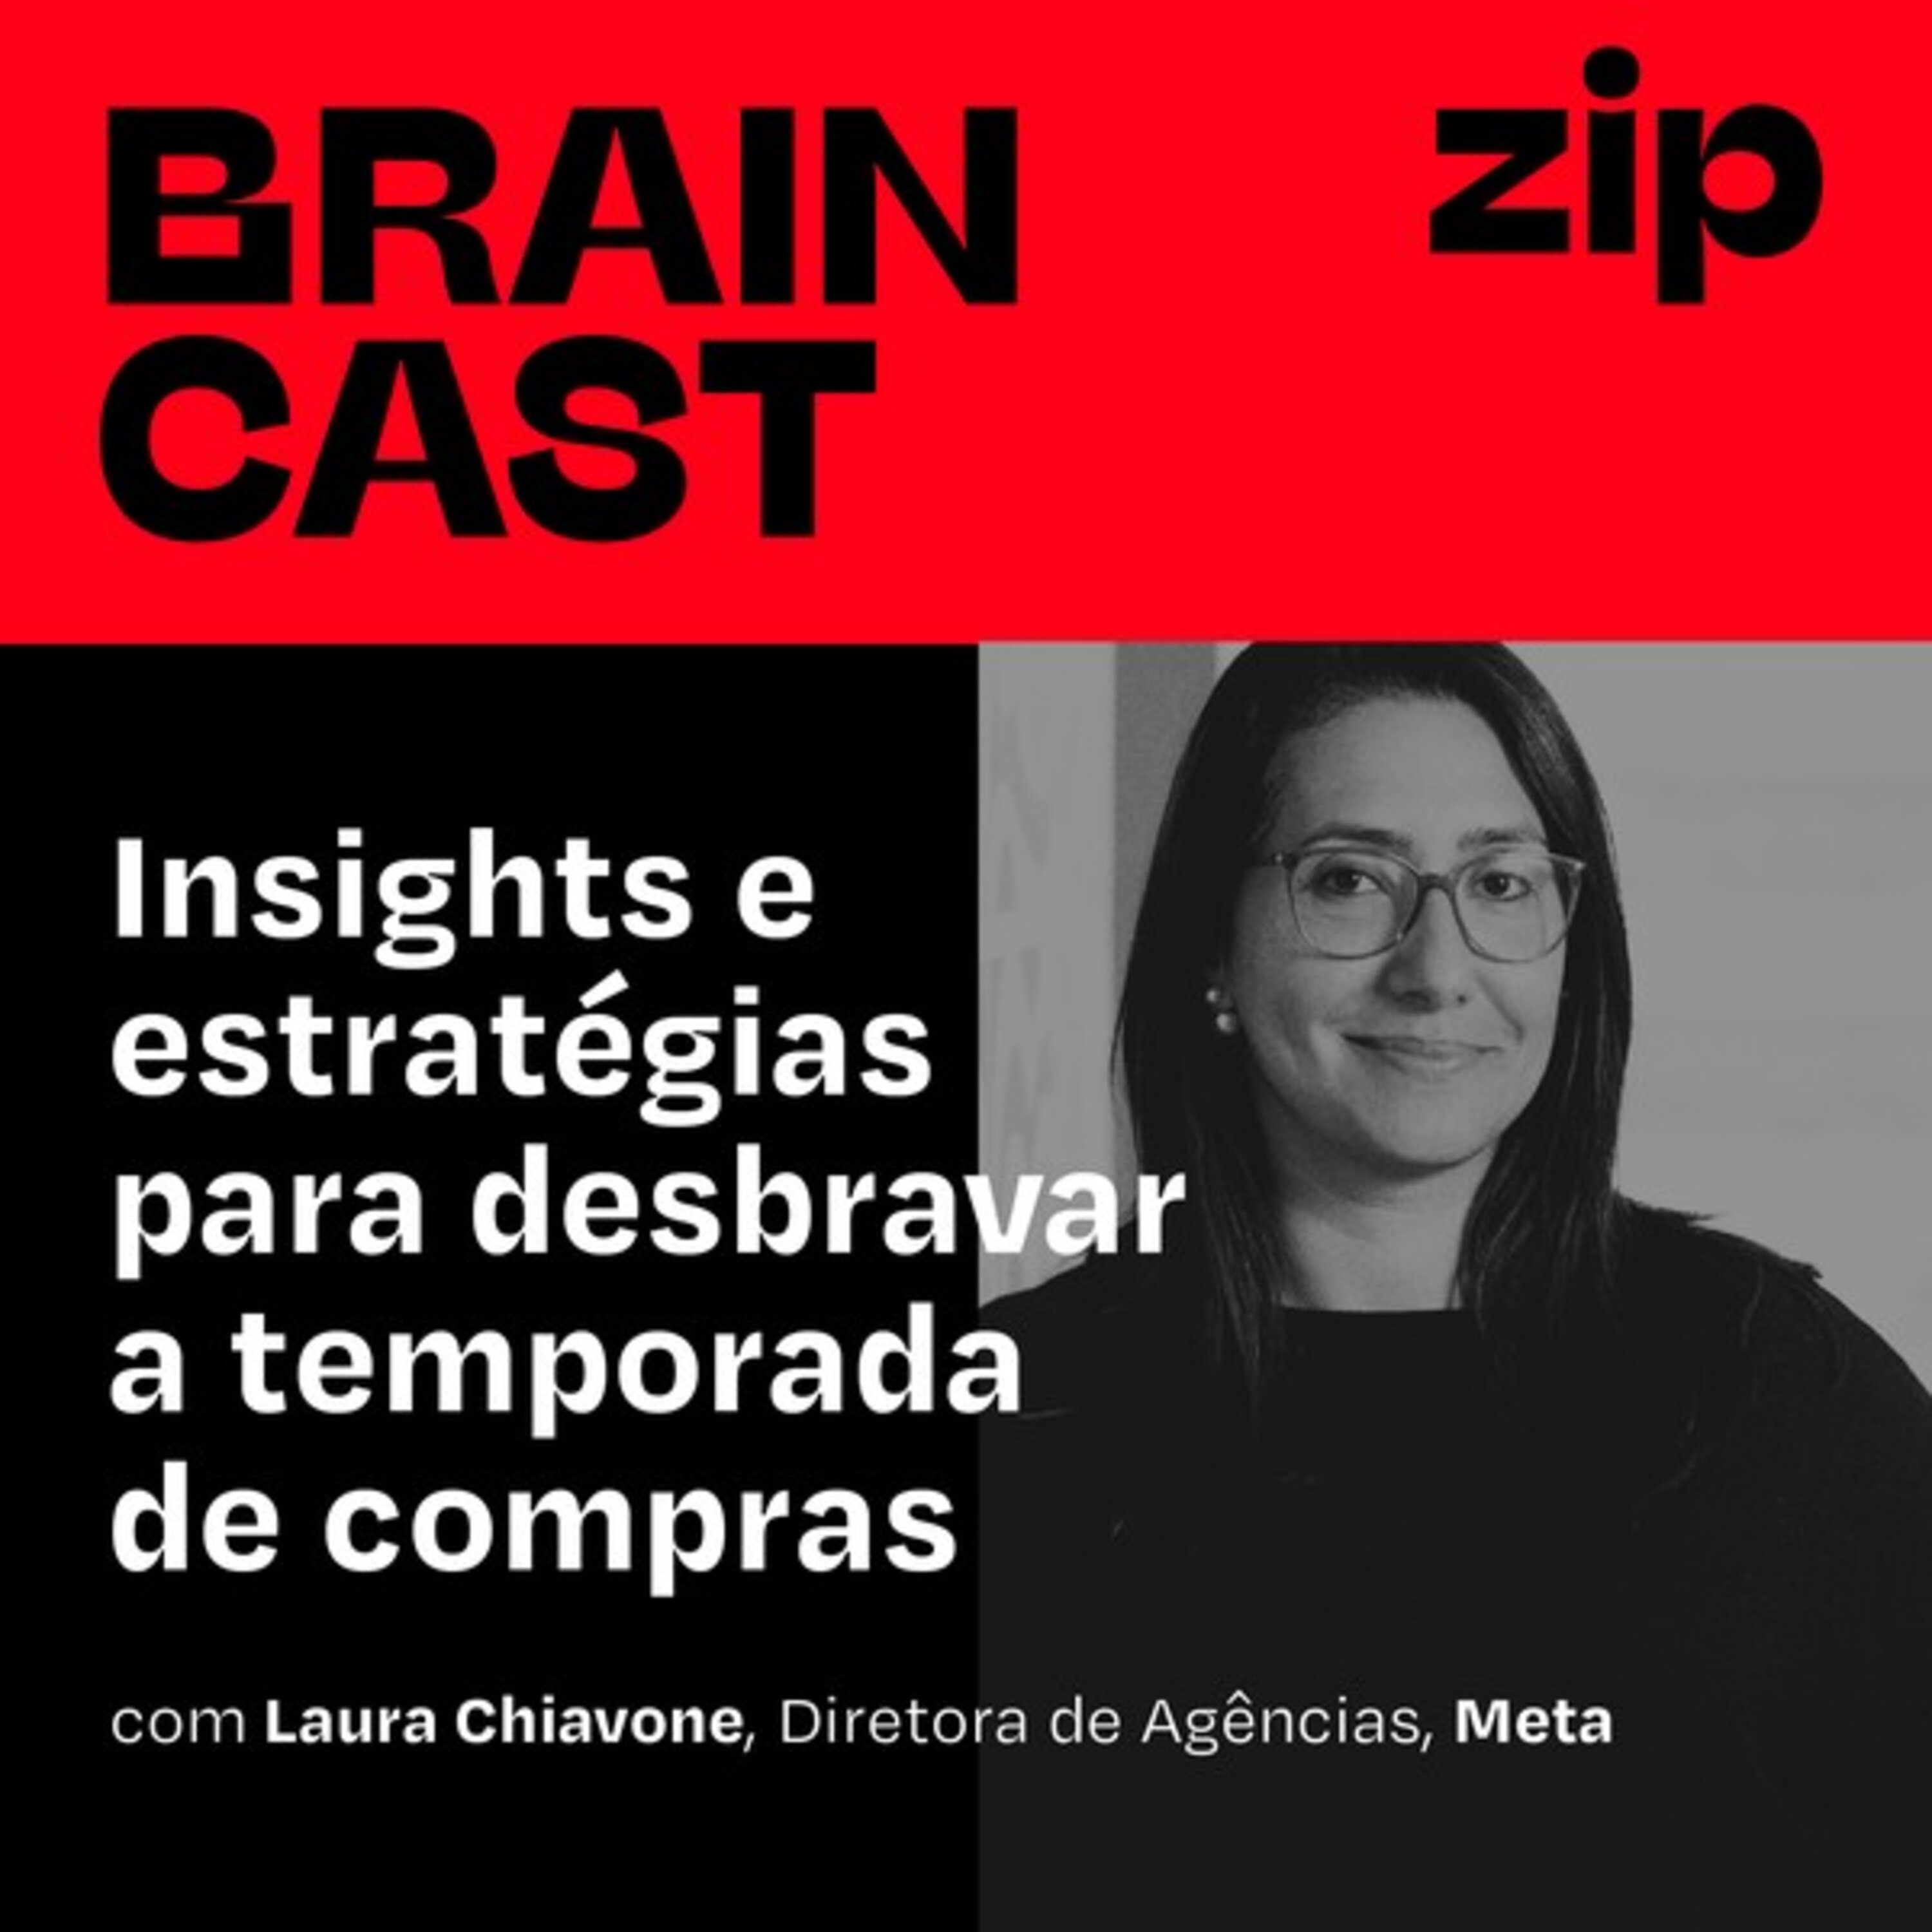 [zip] Insights e estratégias para desbravar a temporada de compras, com Laura Chiavone (Meta)